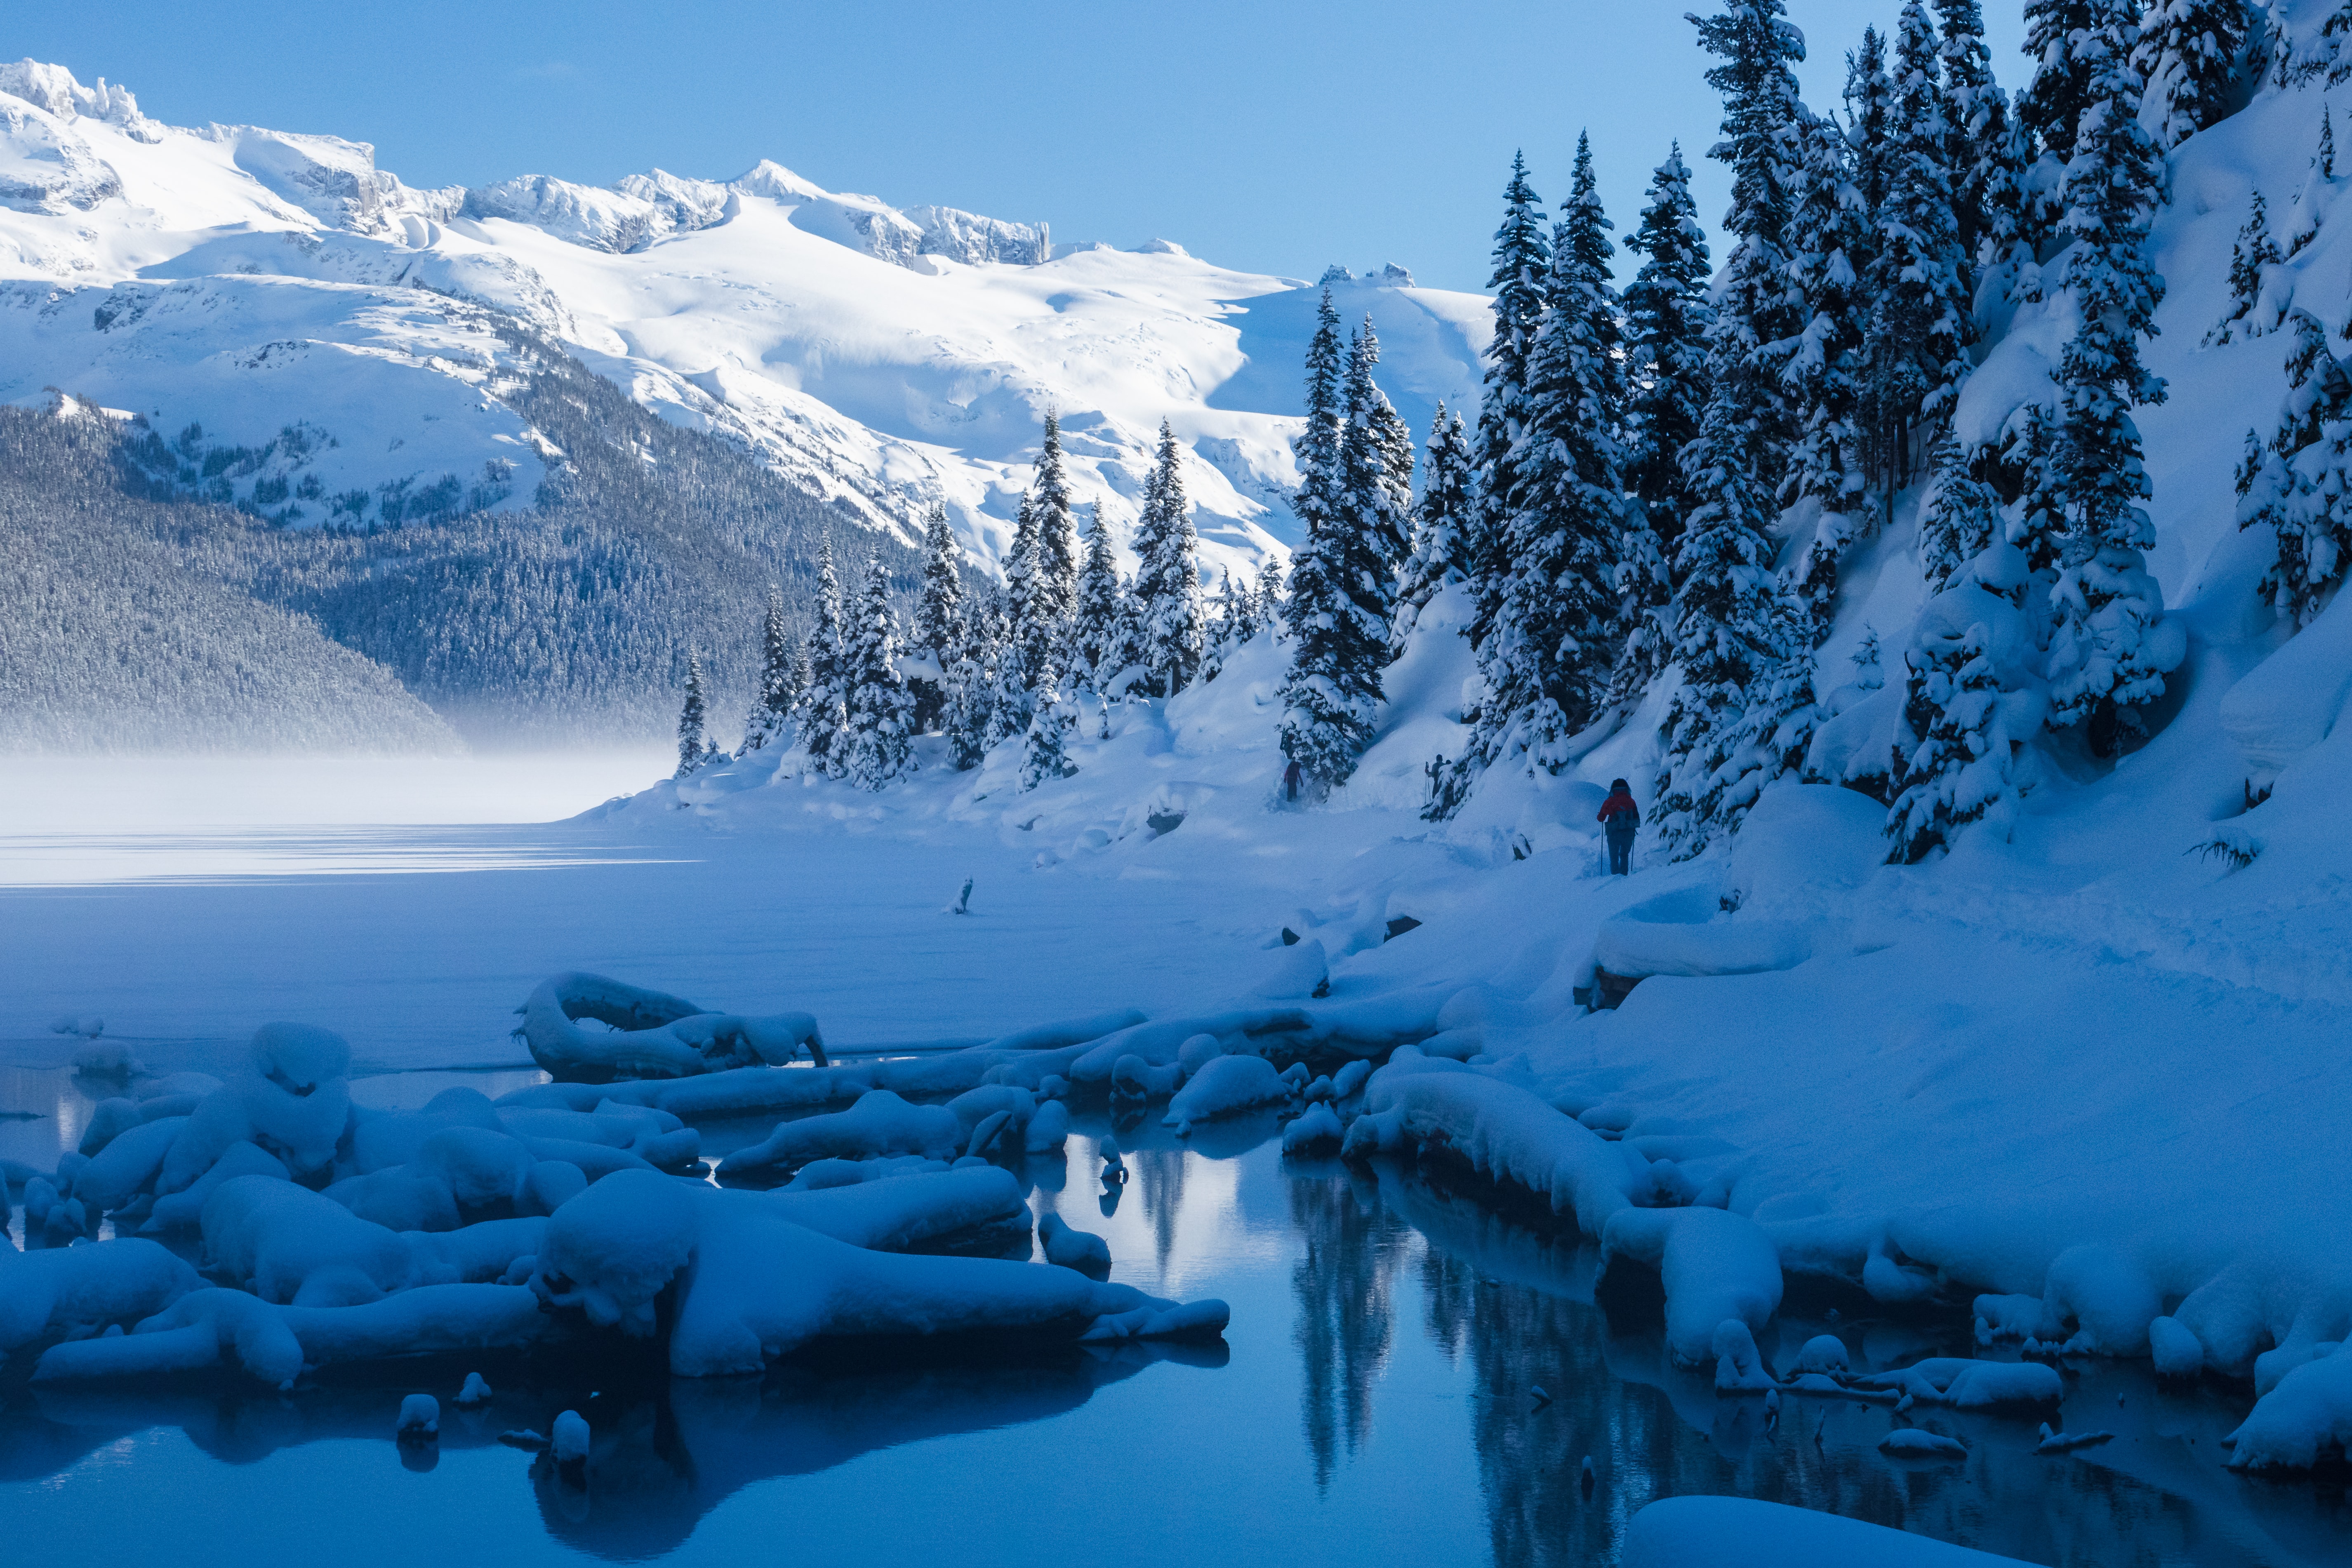 Скачать обои бесплатно Природа, Снег, Озеро, Зима, Деревья, Горы, Пейзаж картинка на рабочий стол ПК